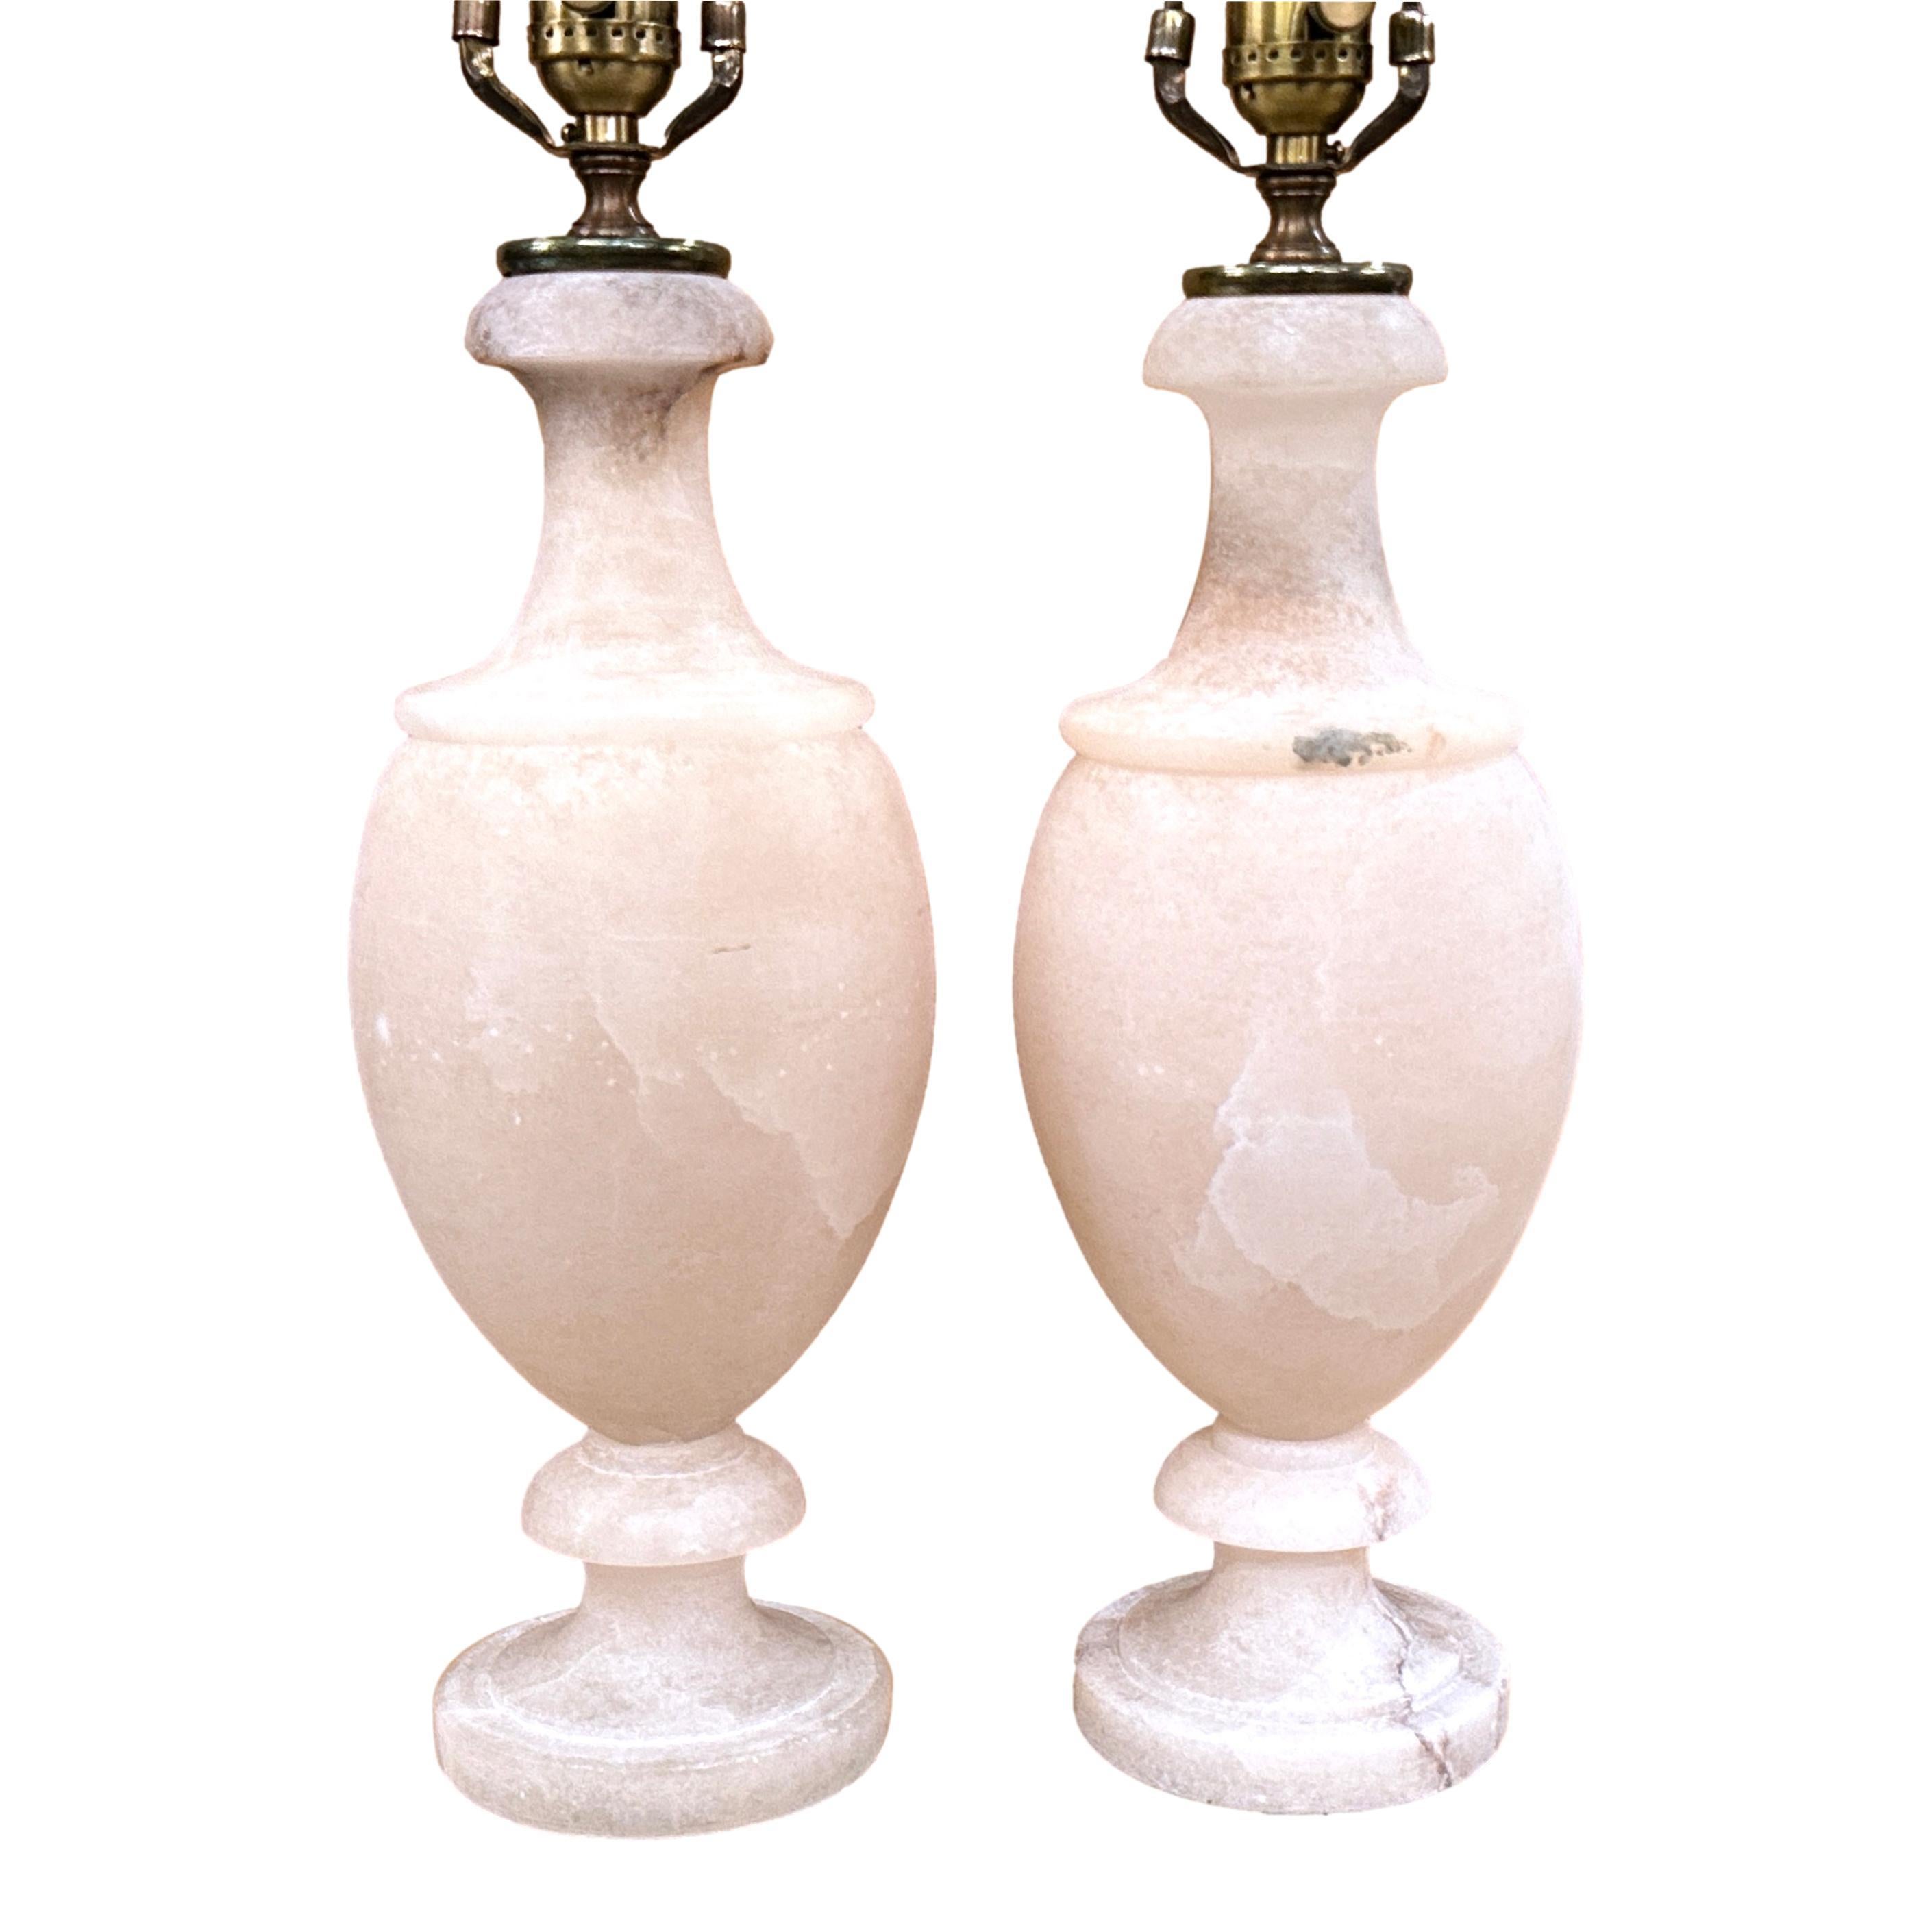 Paar neoklassische italienische Lampen aus geschnitztem Alabaster aus den 1960er Jahren.

Abmessungen:
Höhe des Körpers: 15